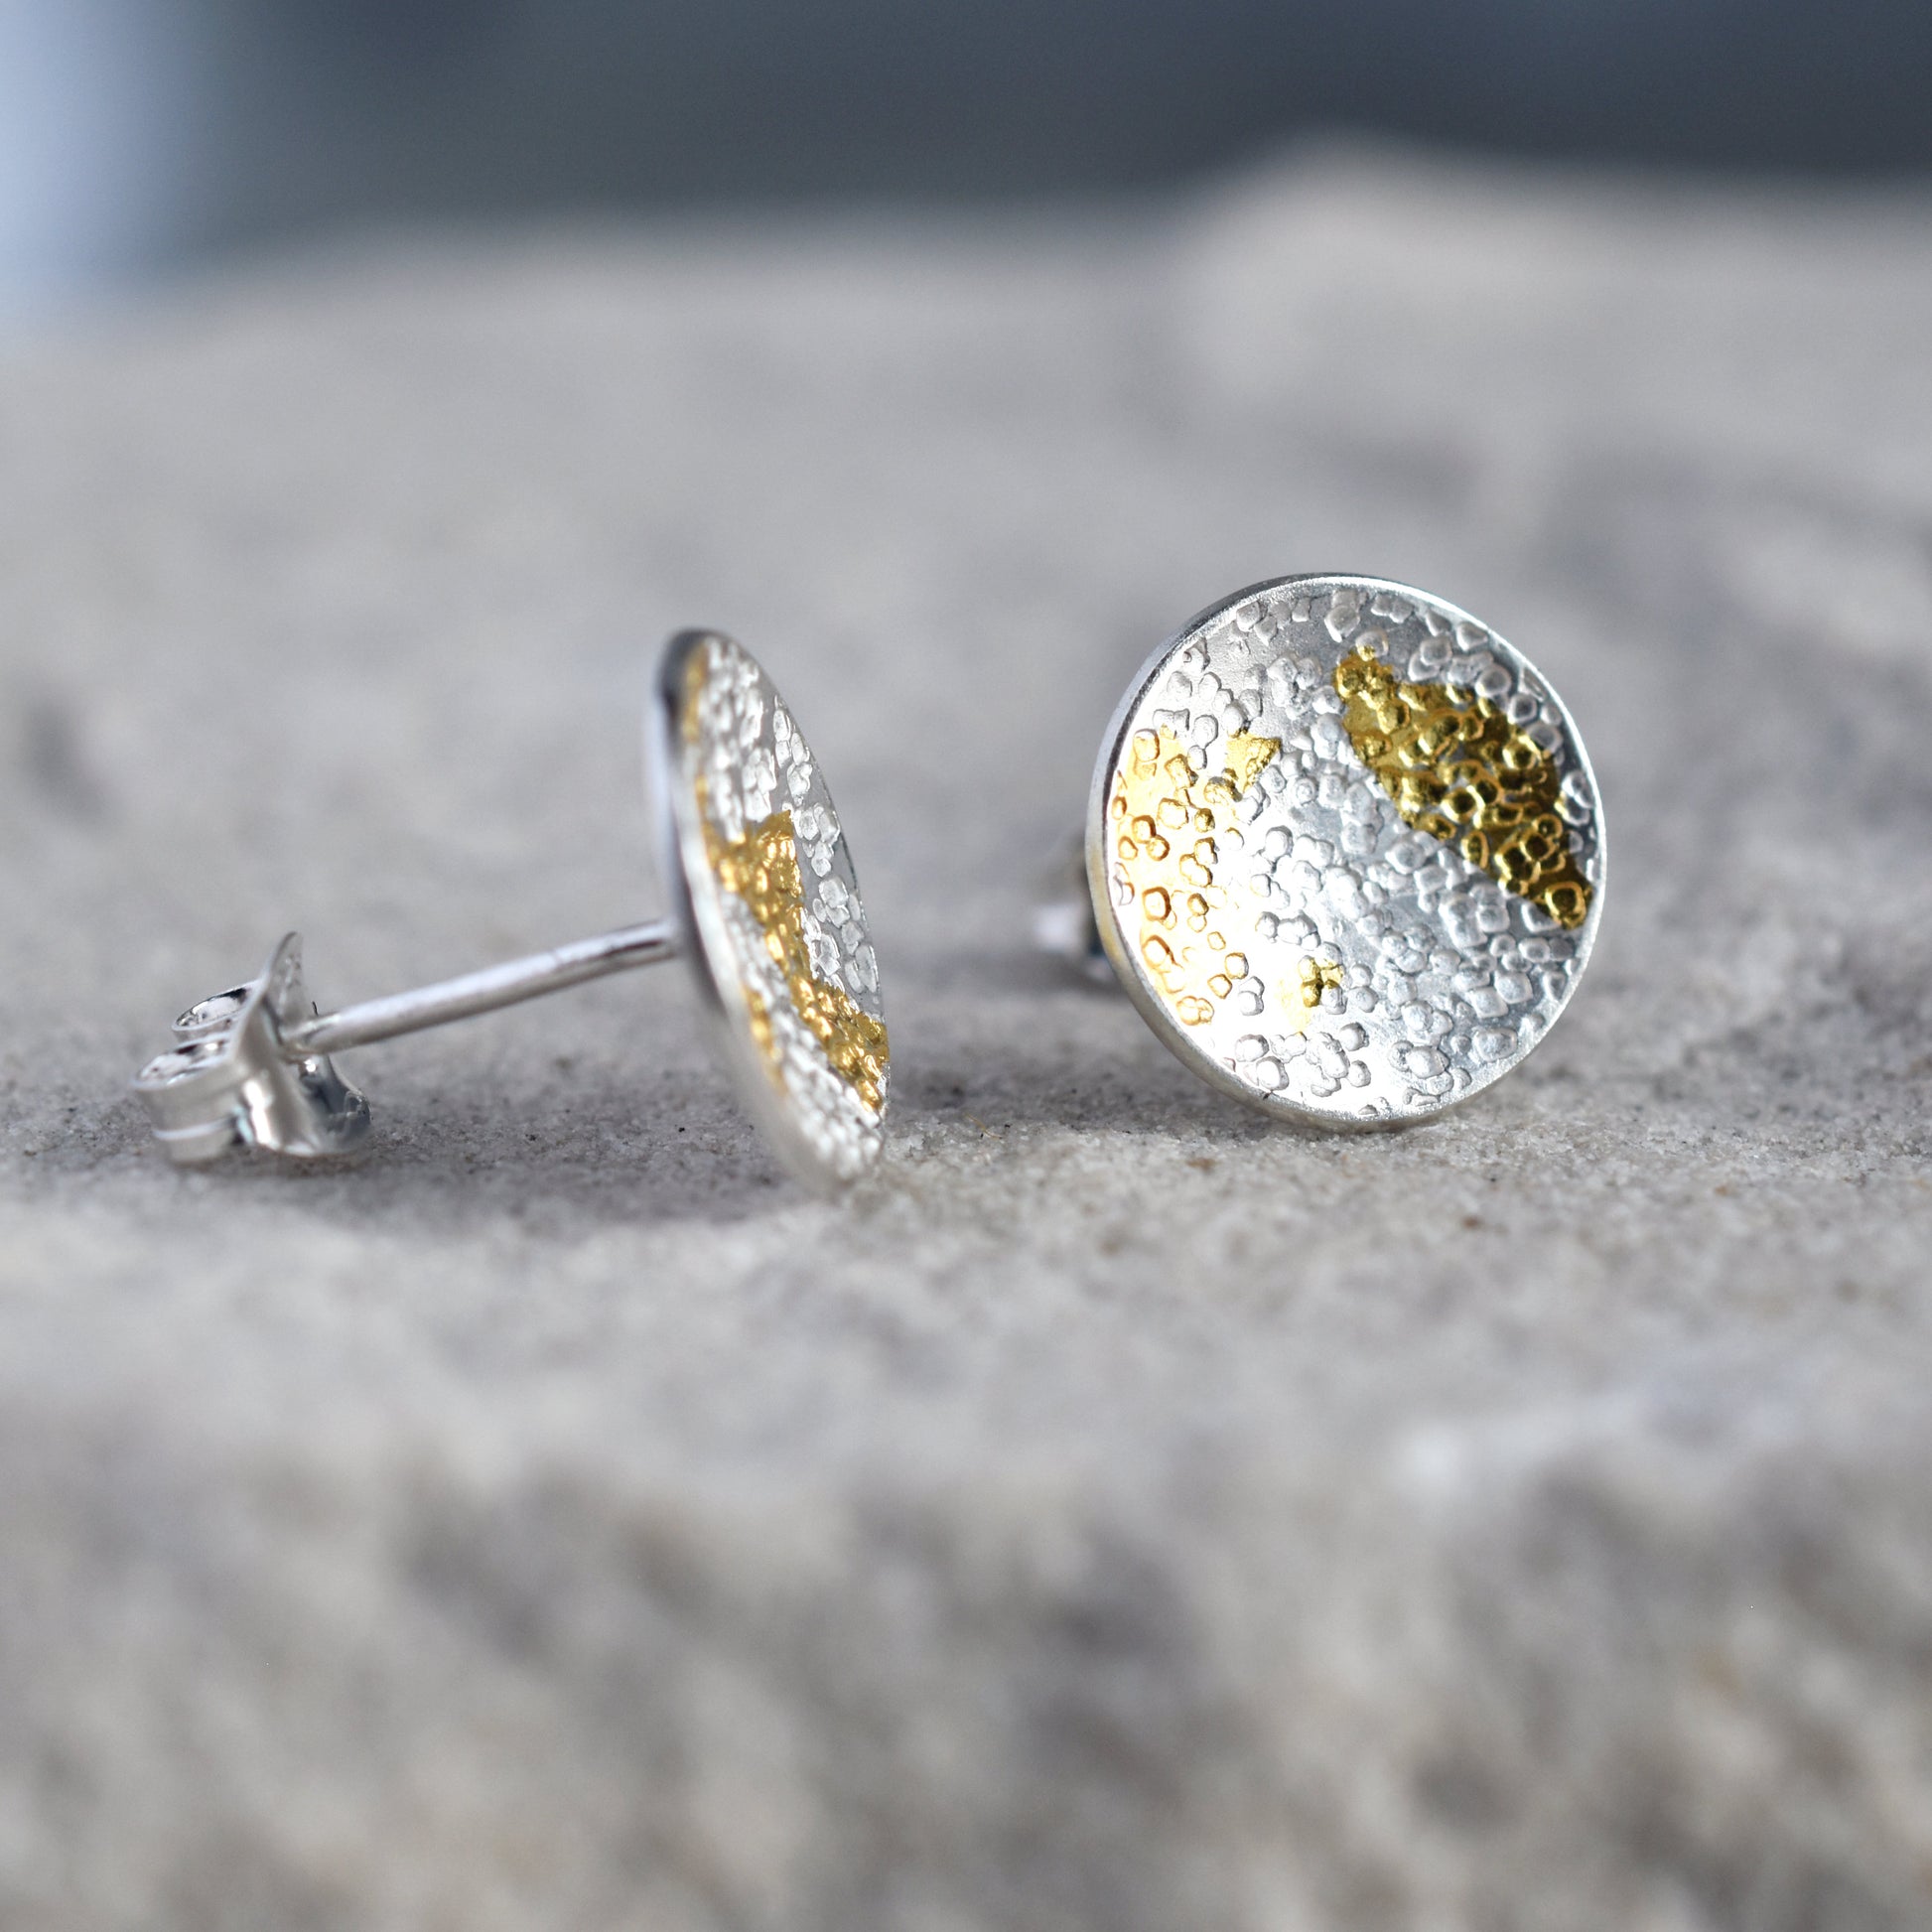 Lichen Stud Earrings - Paisley Pins